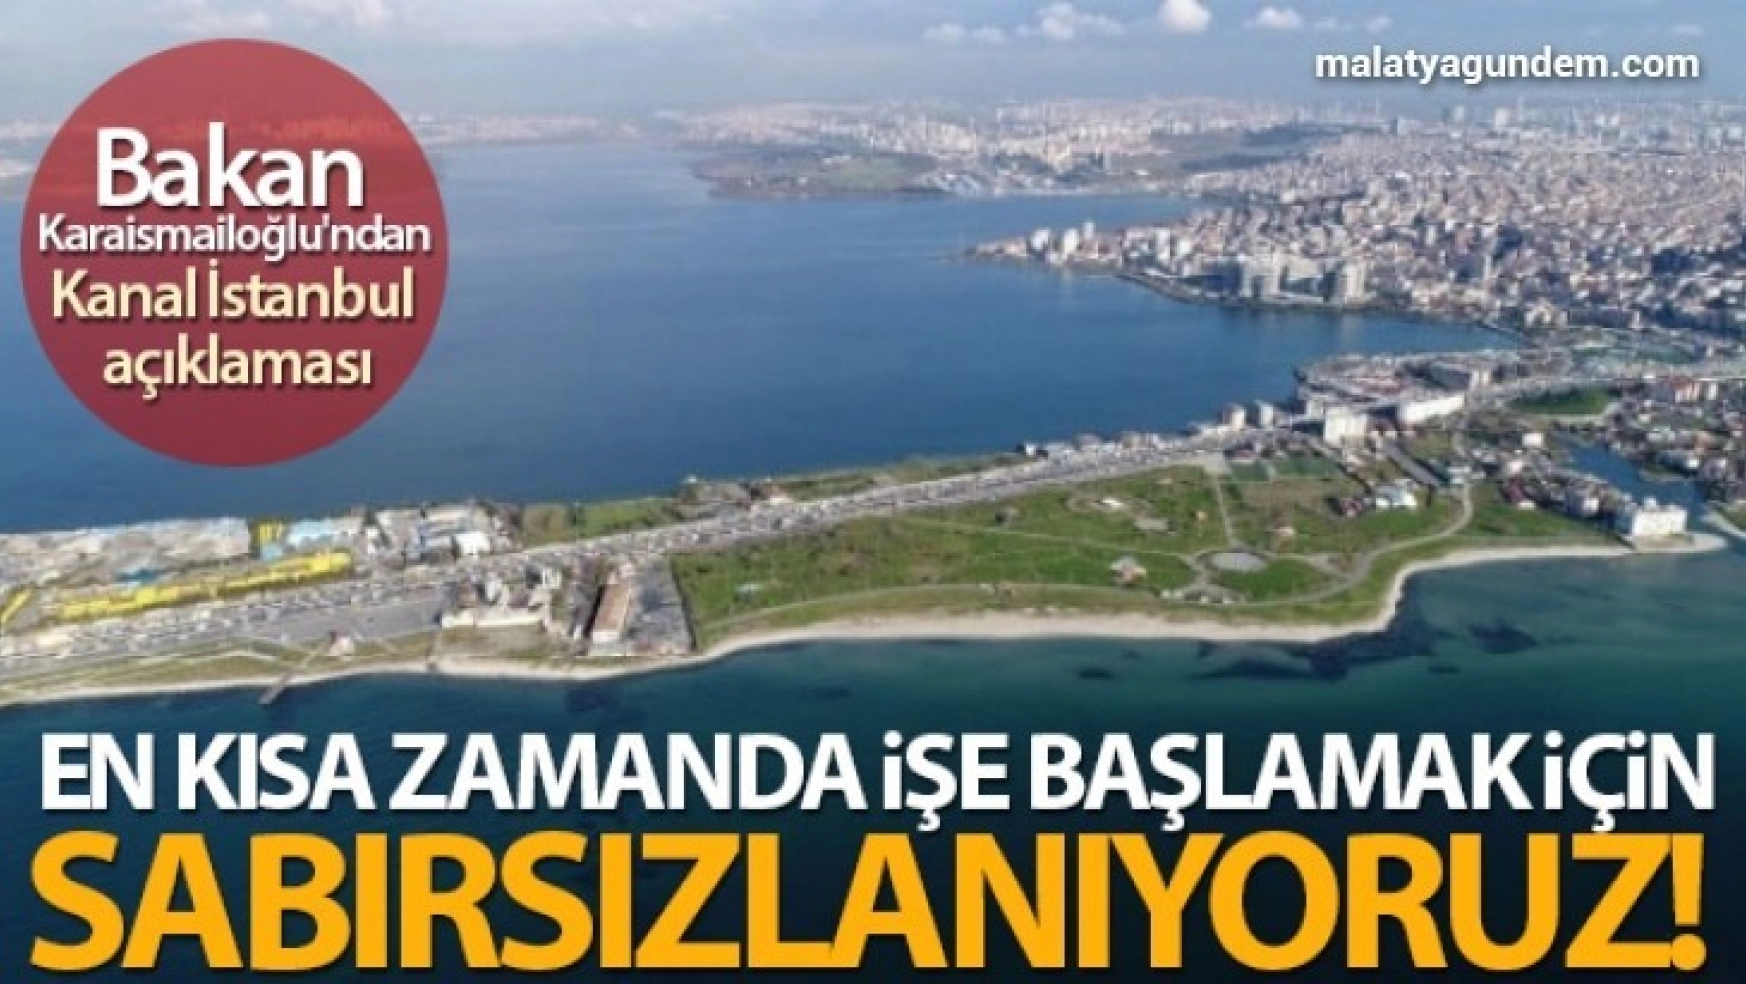 Bakan Karaismailoğlu'ndan Kanal İstanbul açıklaması!